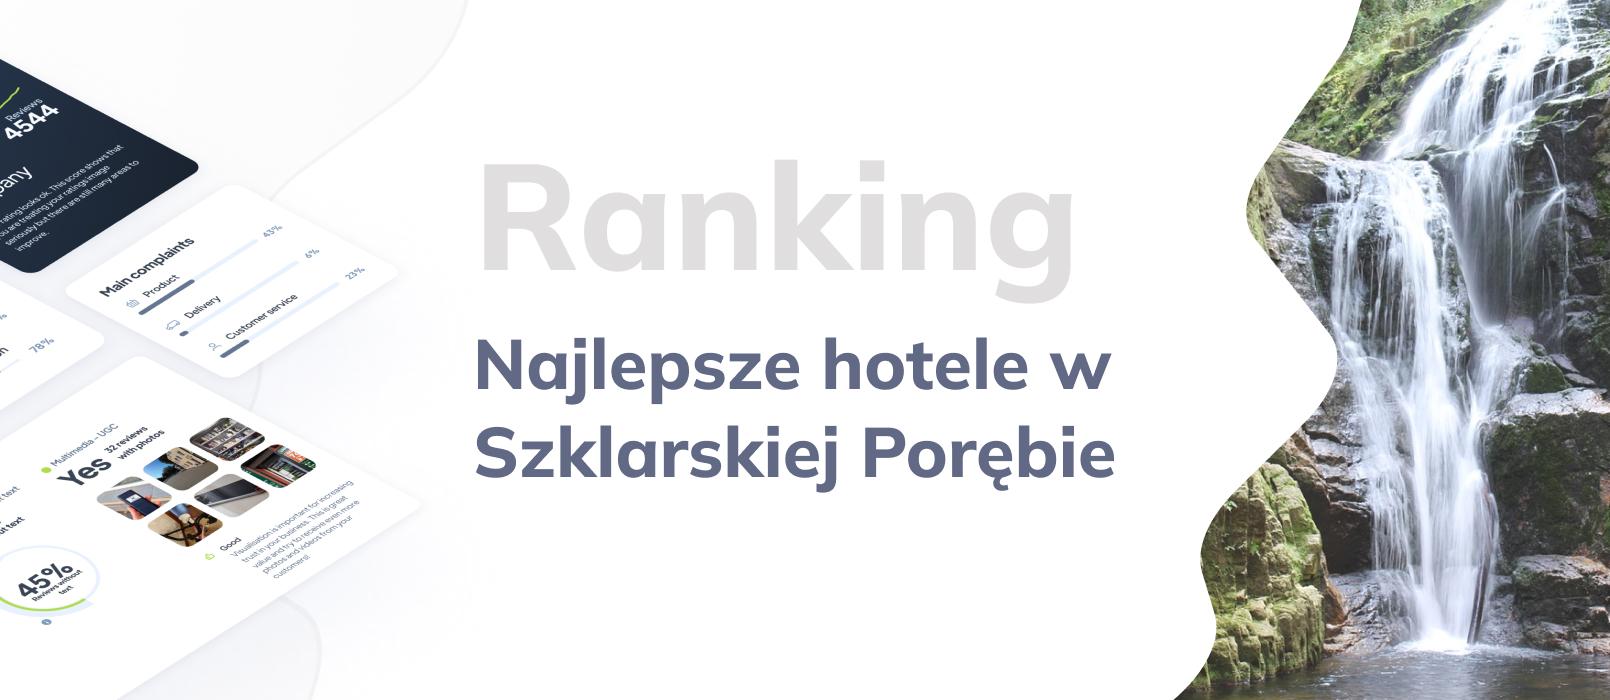 Najlepsze hotele w Szklarskiej Porębie – Ranking 15 najlepszych hoteli w Szklarskiej Porębie